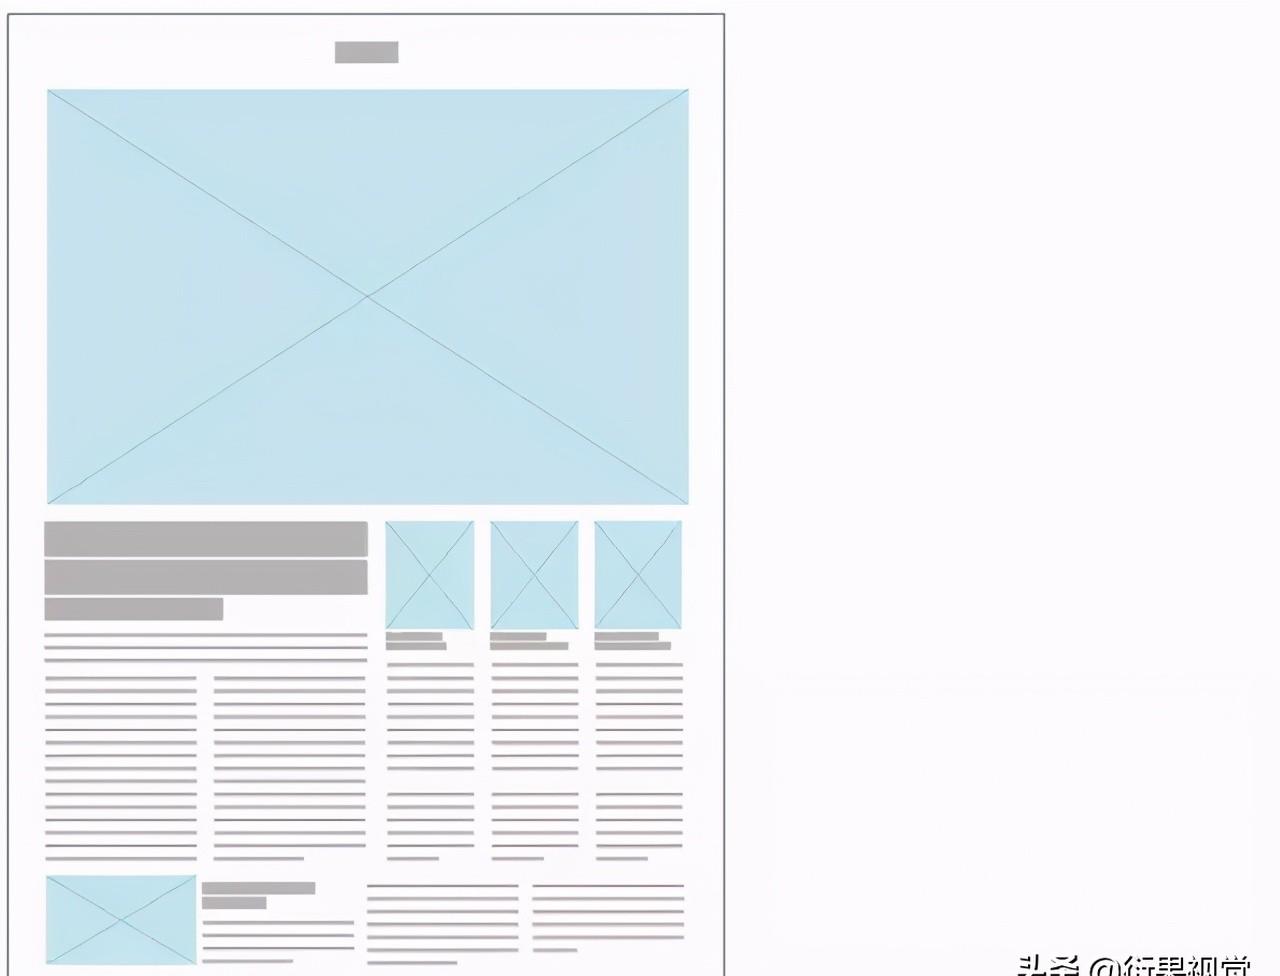 平面设计报纸版式设计的基础知识及元素构成